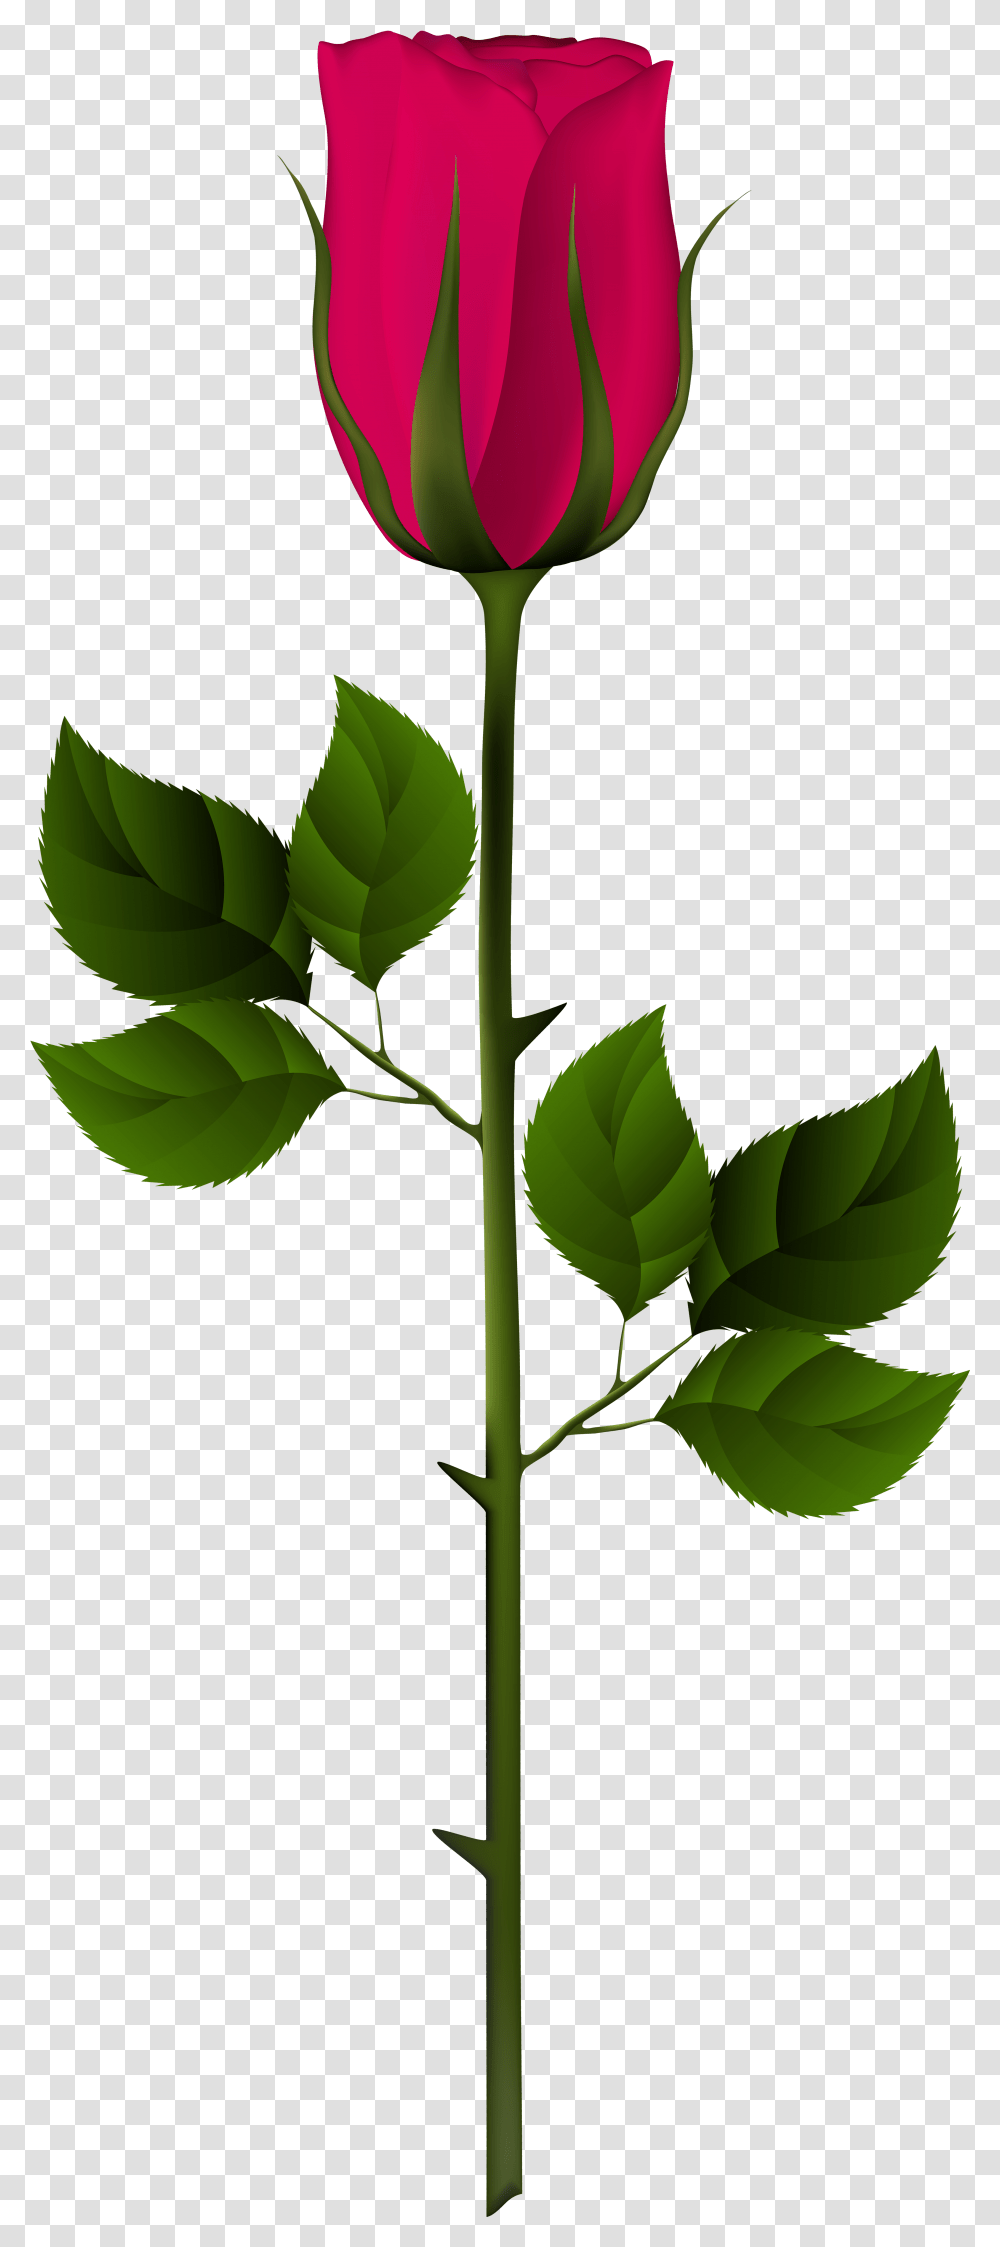 Jpg Free Download Rose Bud Clipart Rose Bud Clipart, Leaf, Plant, Green, Flower Transparent Png